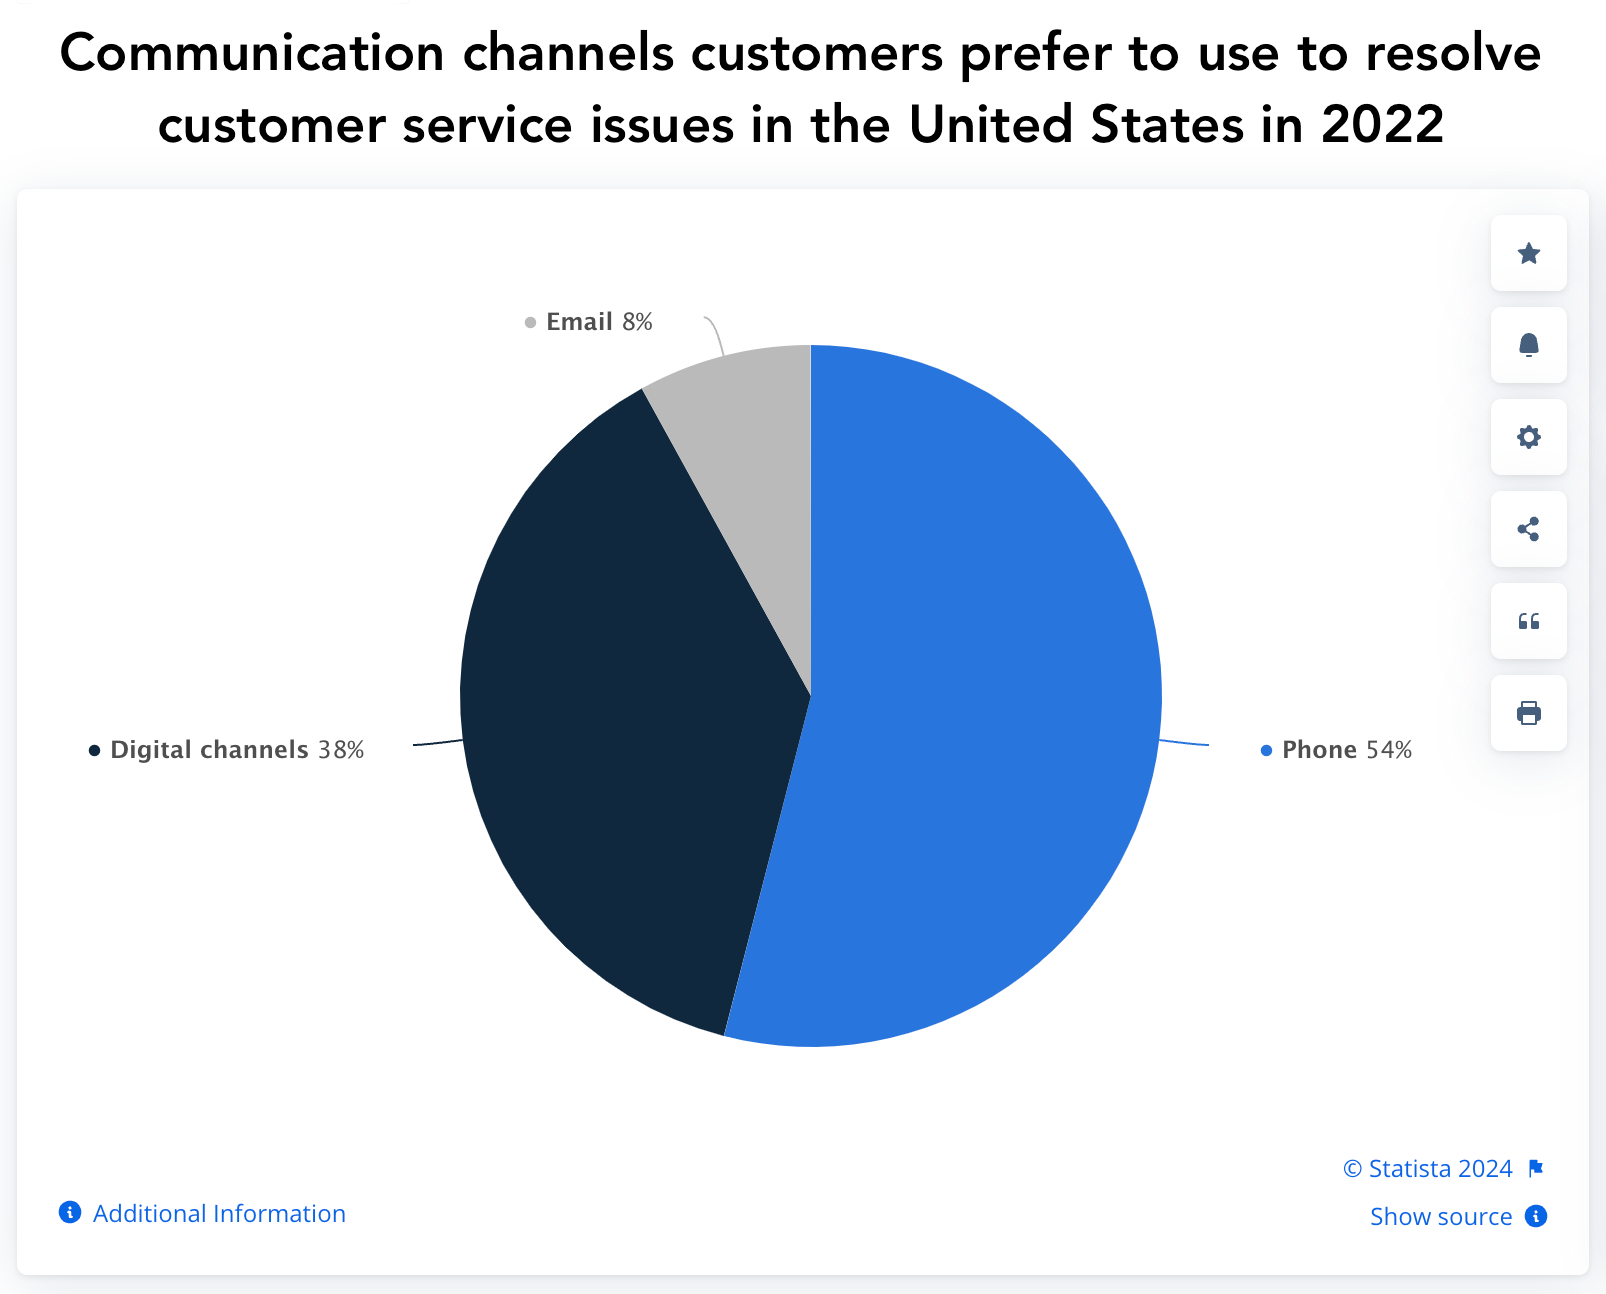 Grafico a torta di Statista che mostra i canali di comunicazione che i clienti preferiscono utilizzare per risolvere i problemi negli Stati Uniti nel 2022: telefono, canali digitali, e-mail